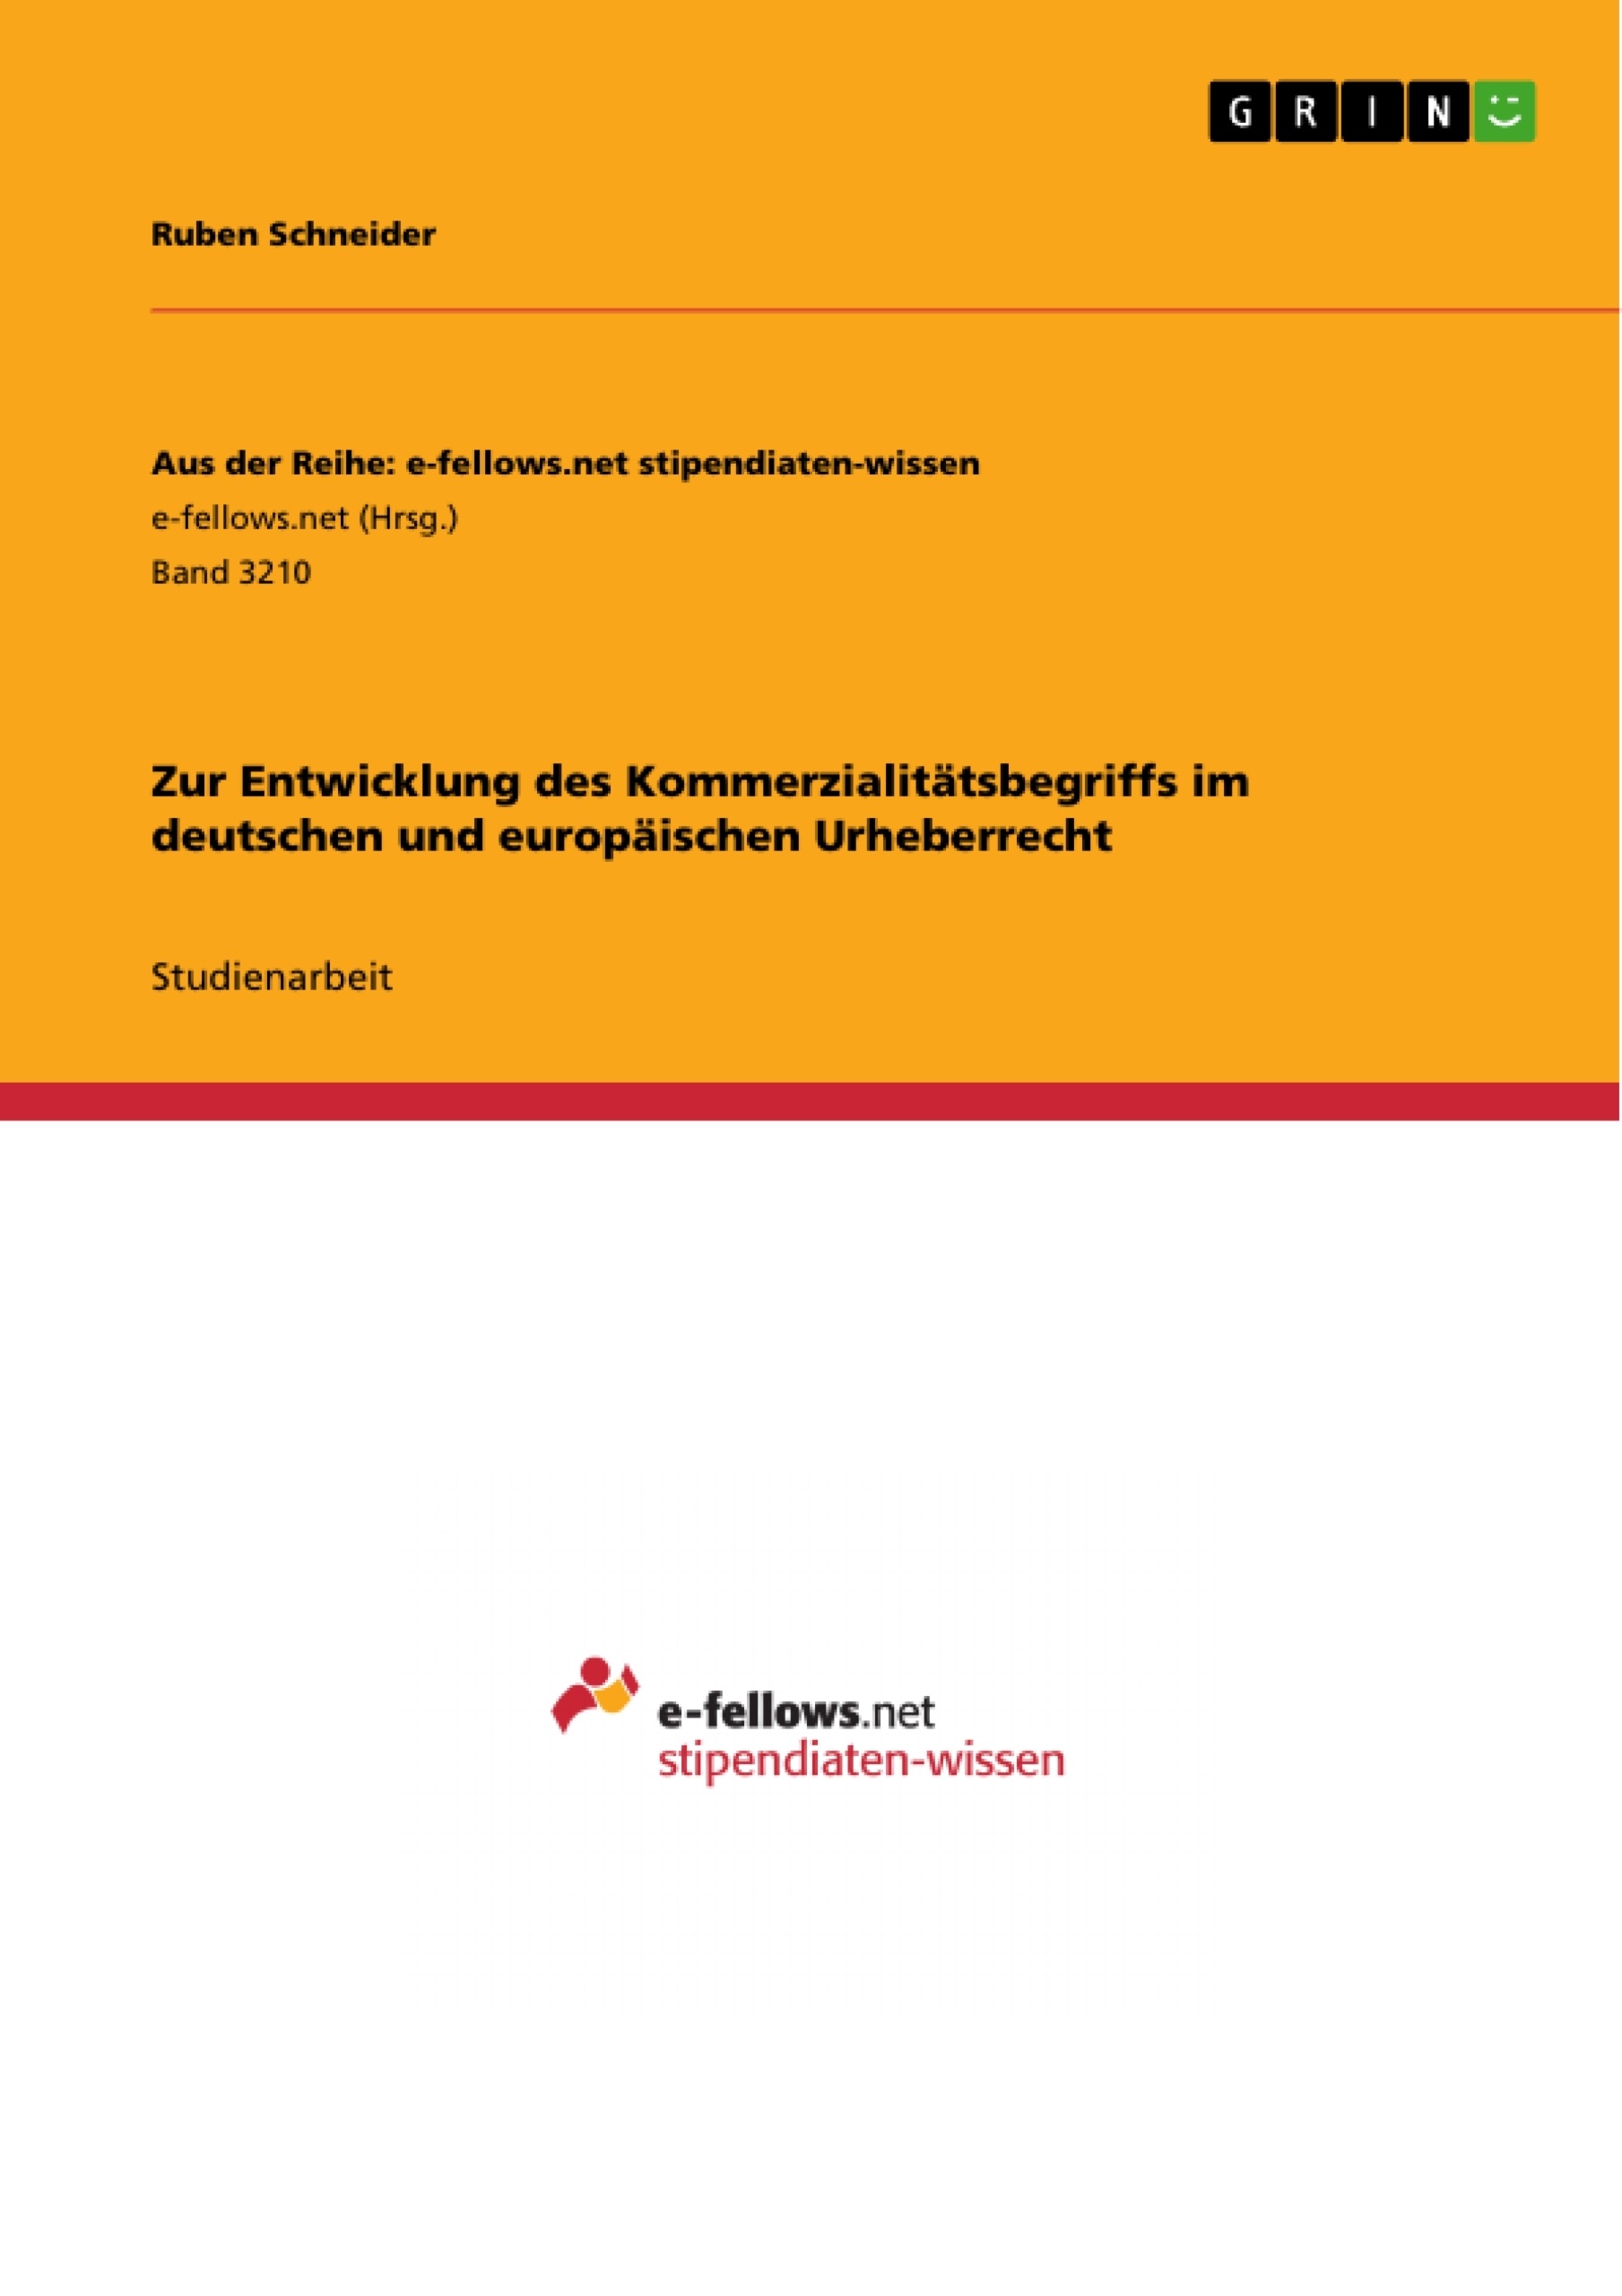 Title: Zur Entwicklung des Kommerzialitätsbegriffs im deutschen und europäischen Urheberrecht